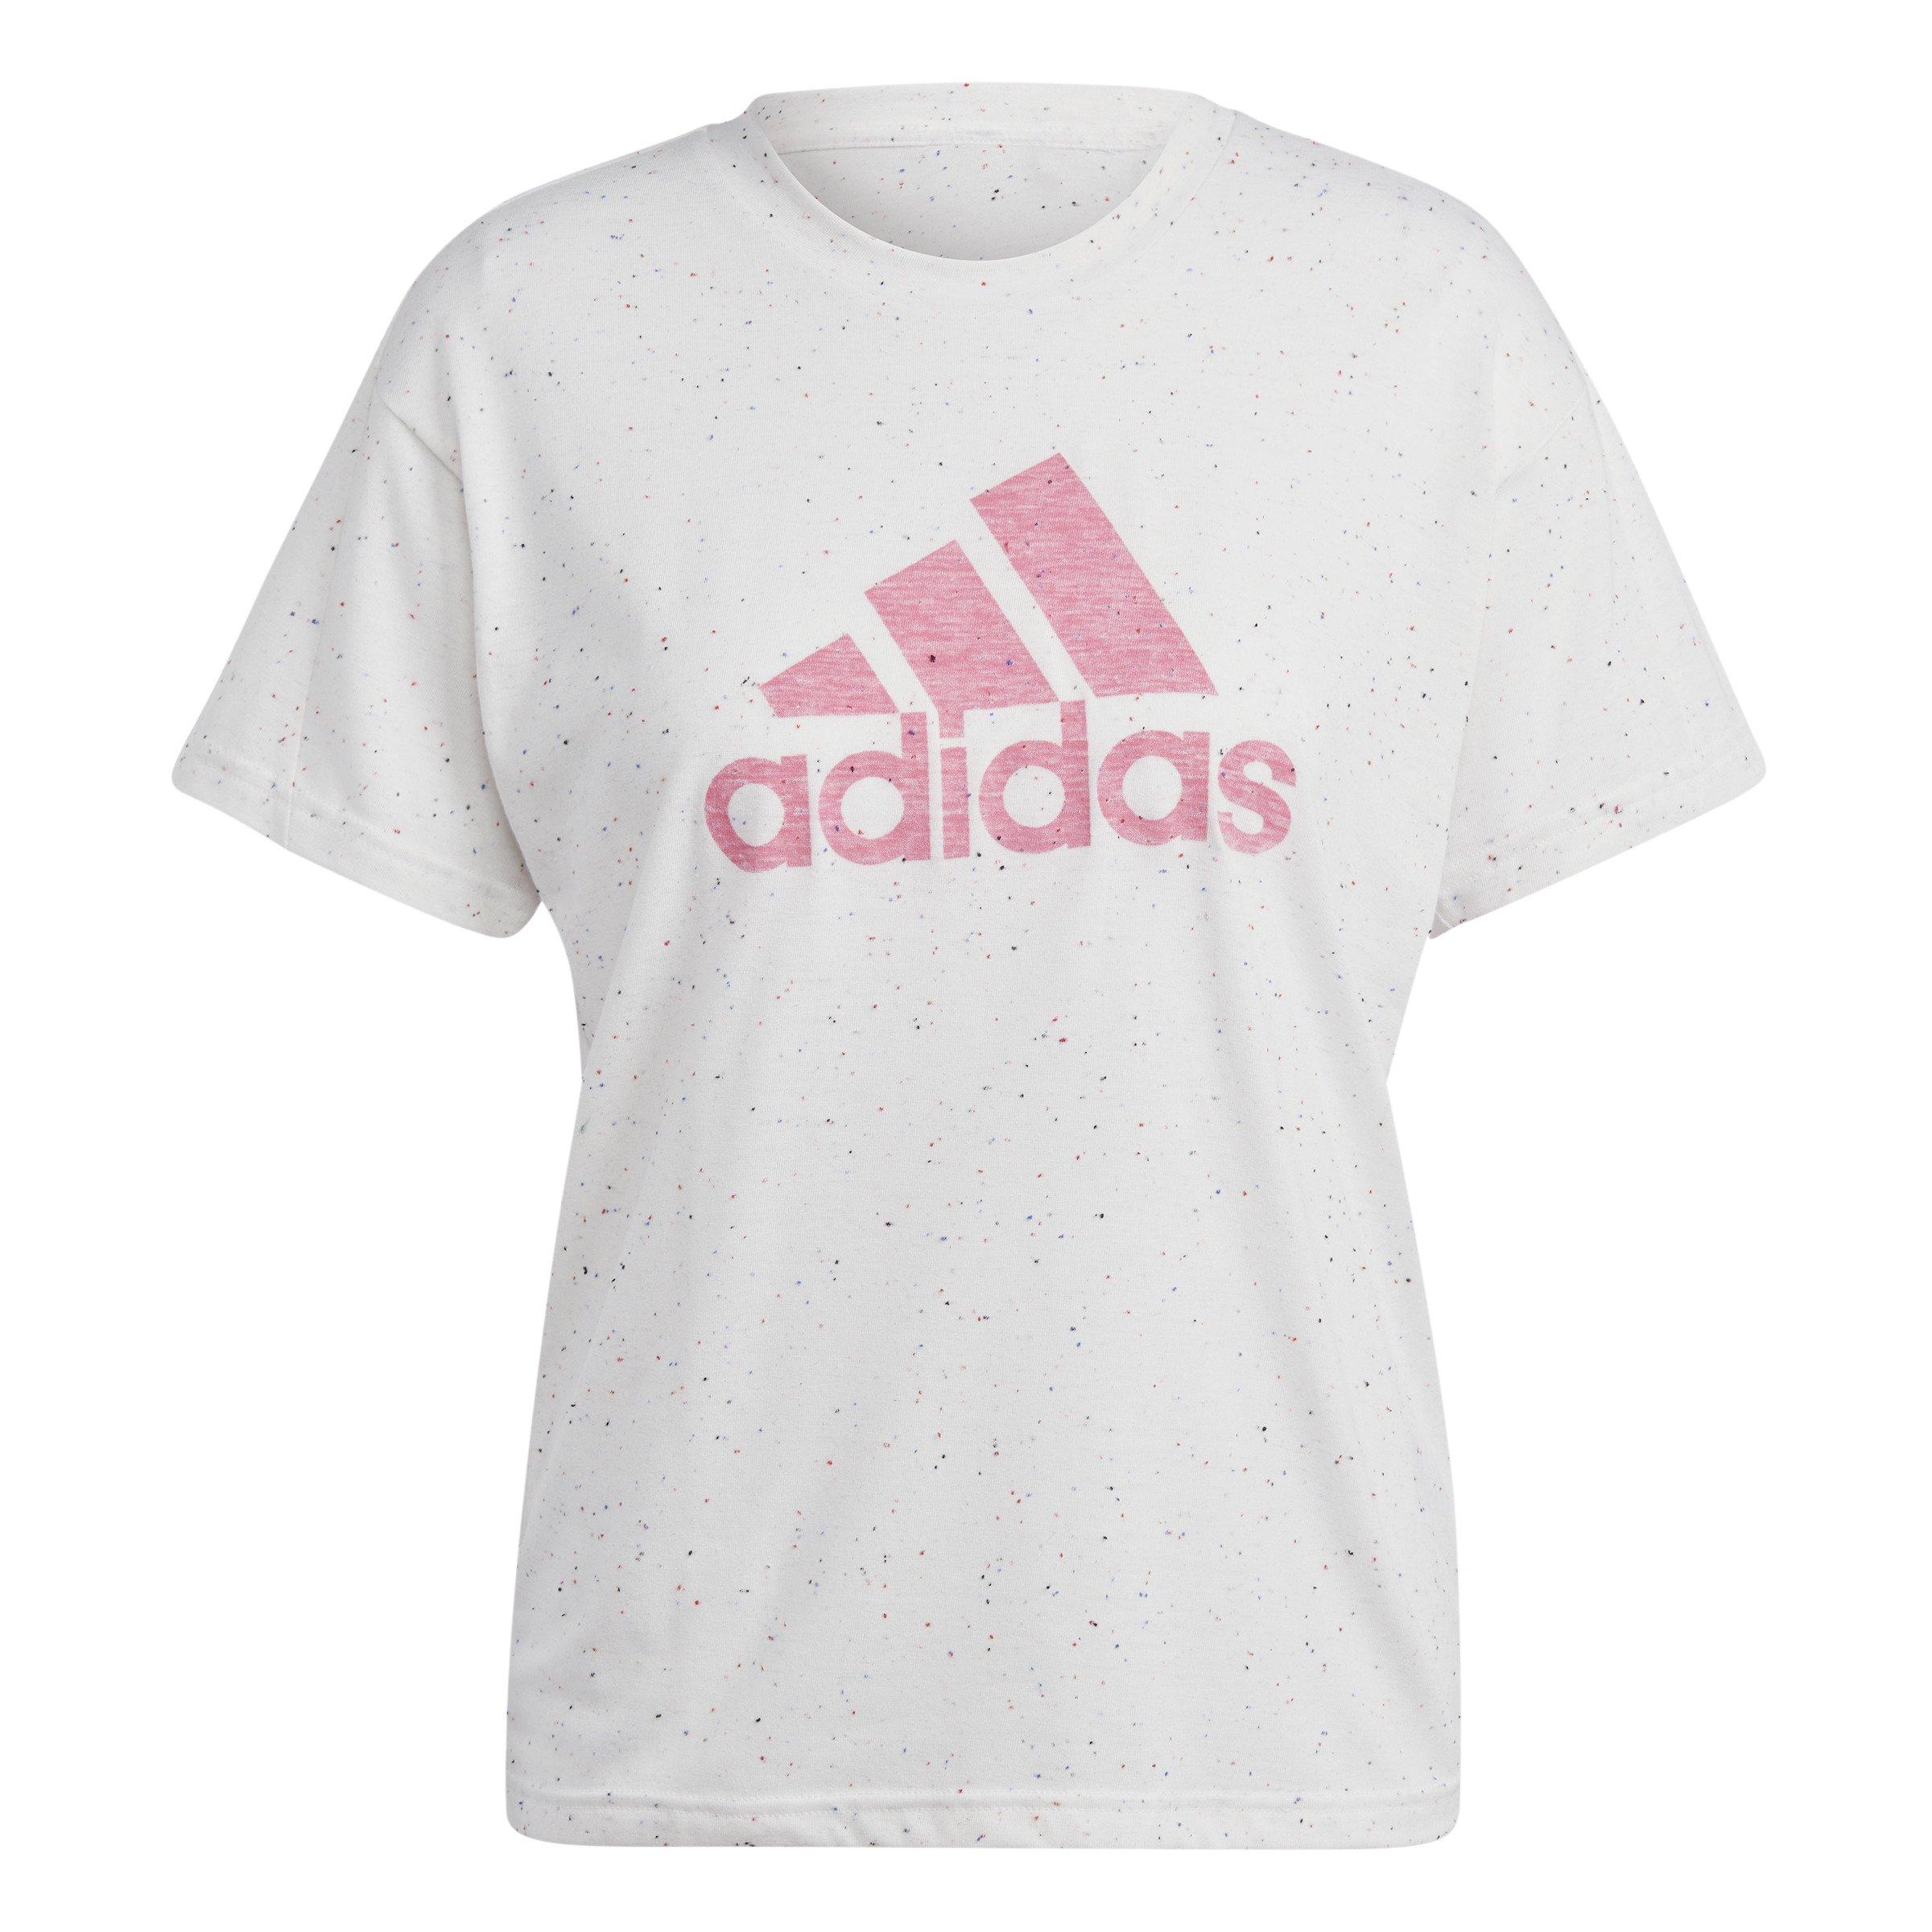 Future adidas T-Shirt - Winners Icons White Women\'s